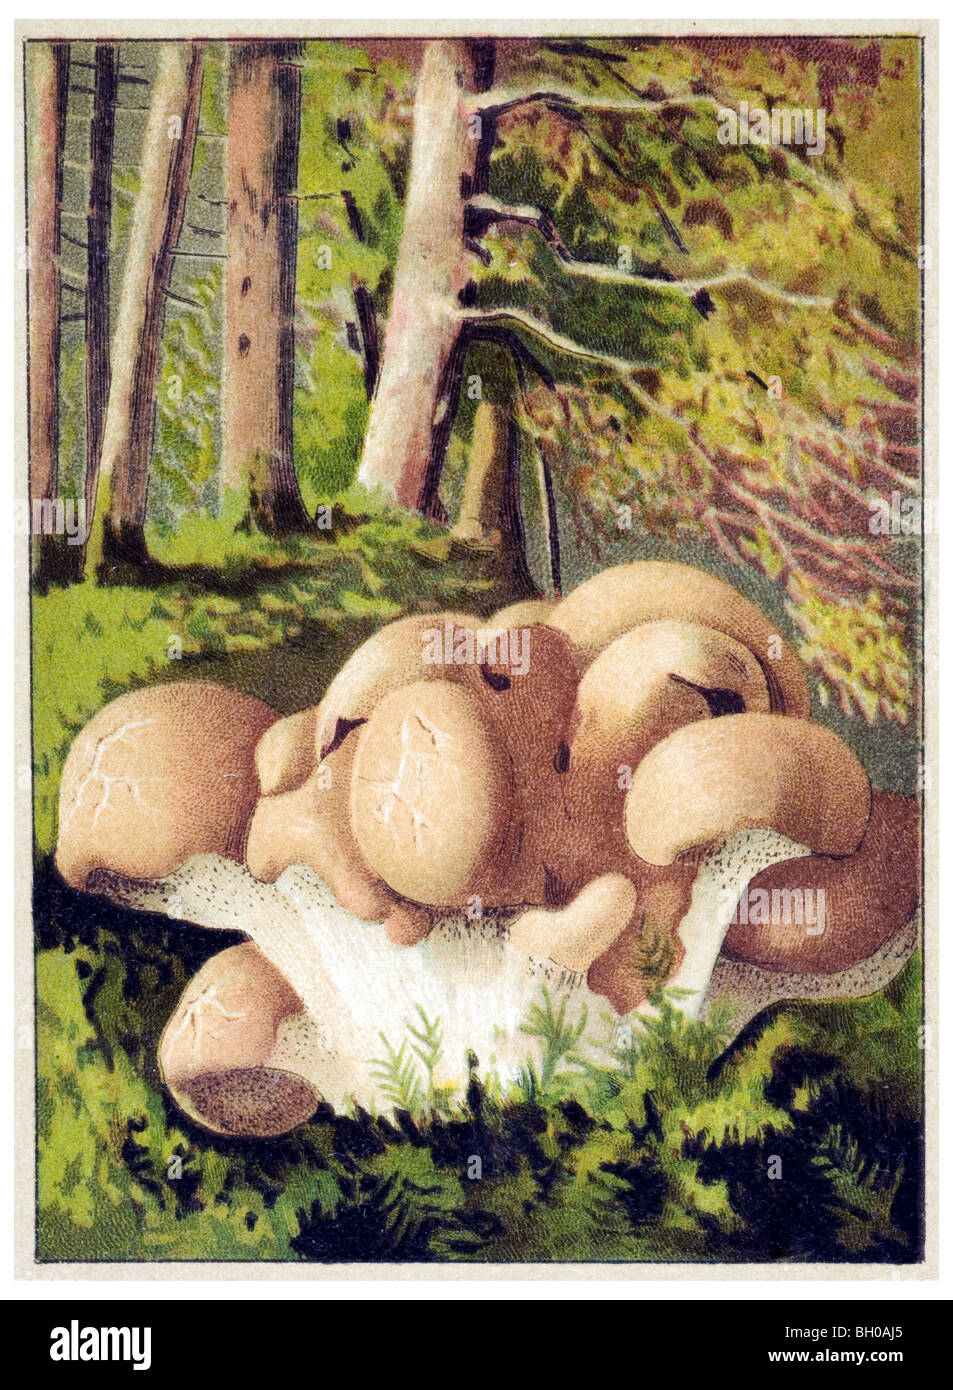 Polyporus confluens mushroom fungus mushroom Stock Photo